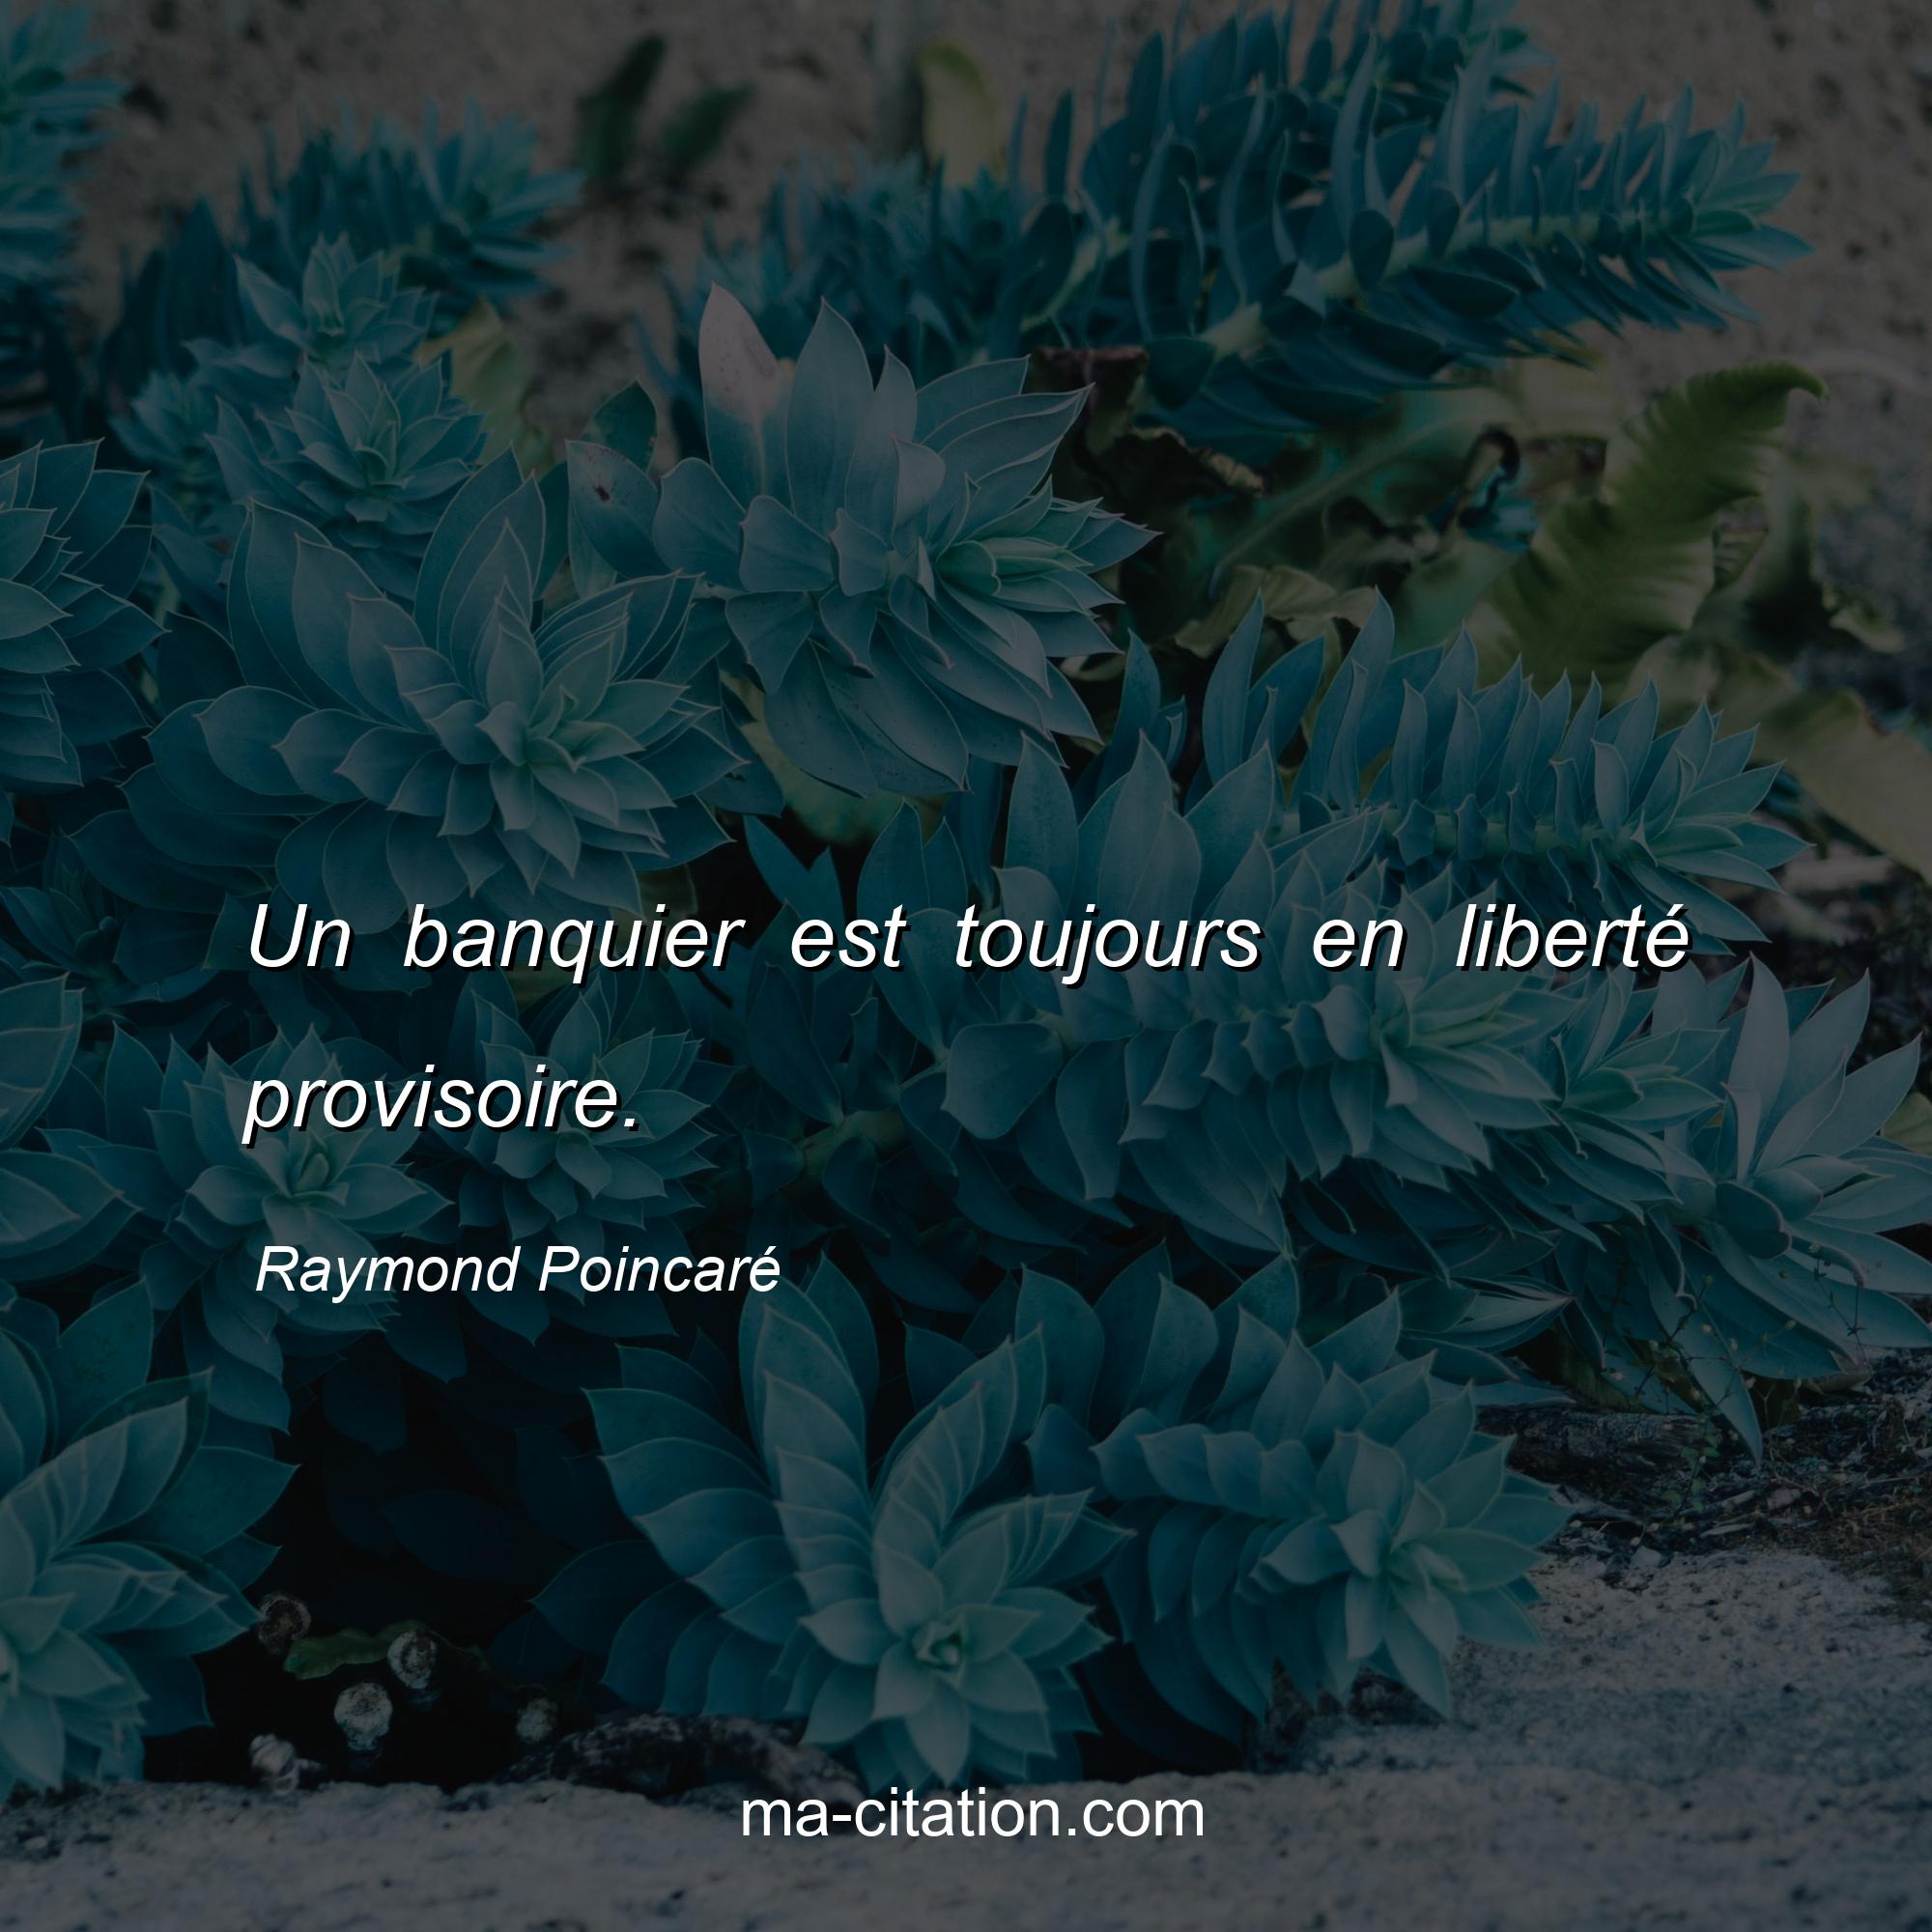 Raymond Poincaré : Un banquier est toujours en liberté provisoire.